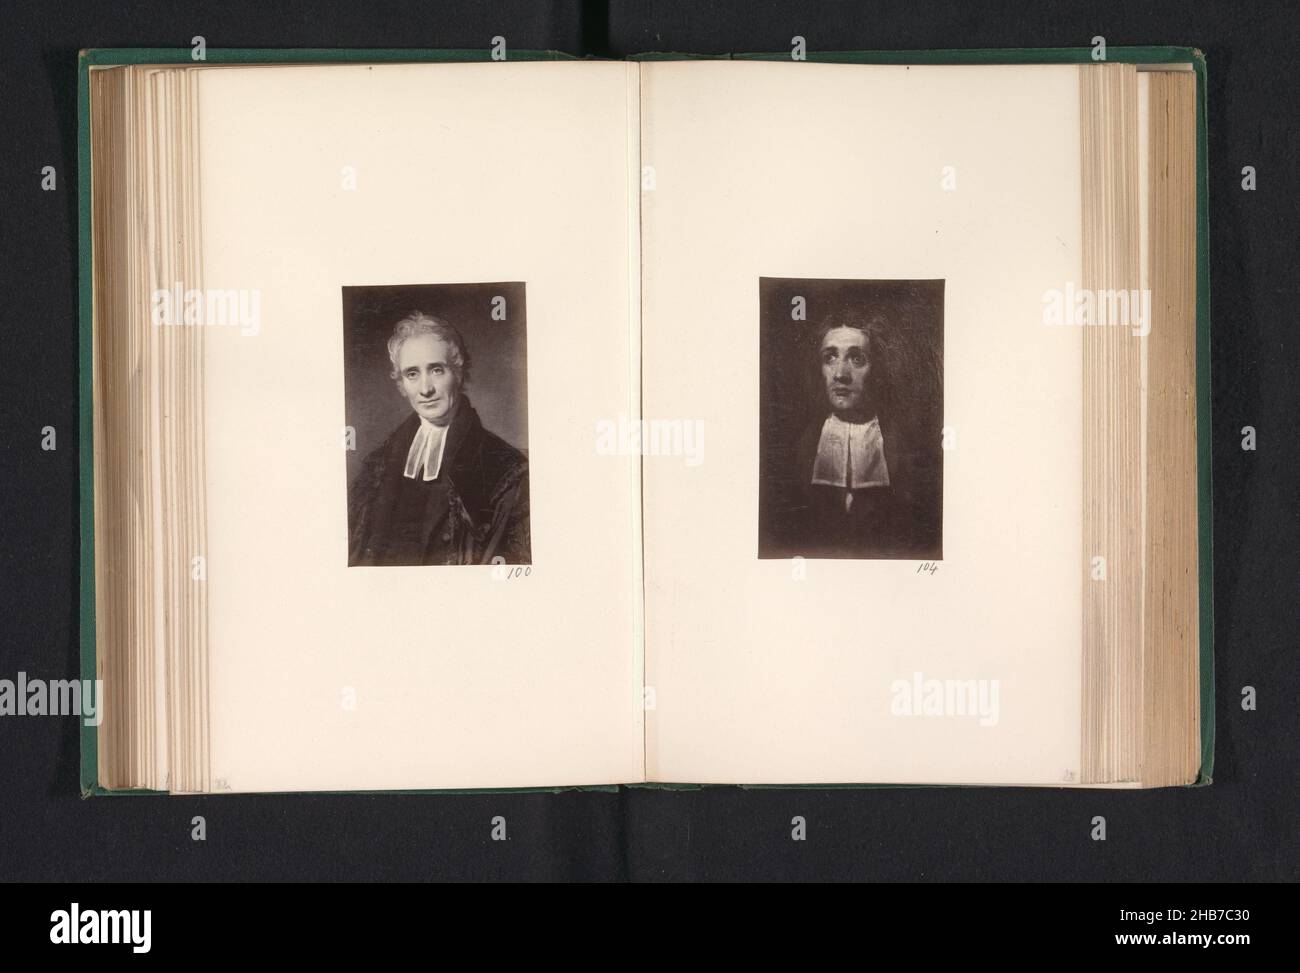 Photoréproduction d'une peinture, représentant un portrait d'Edward Irving, Thomas Annan, d'après : William Dyce, c.1863 - avant 1868, support photographique, imprimé albumine, hauteur 90 mm × largeur 60 mm Banque D'Images